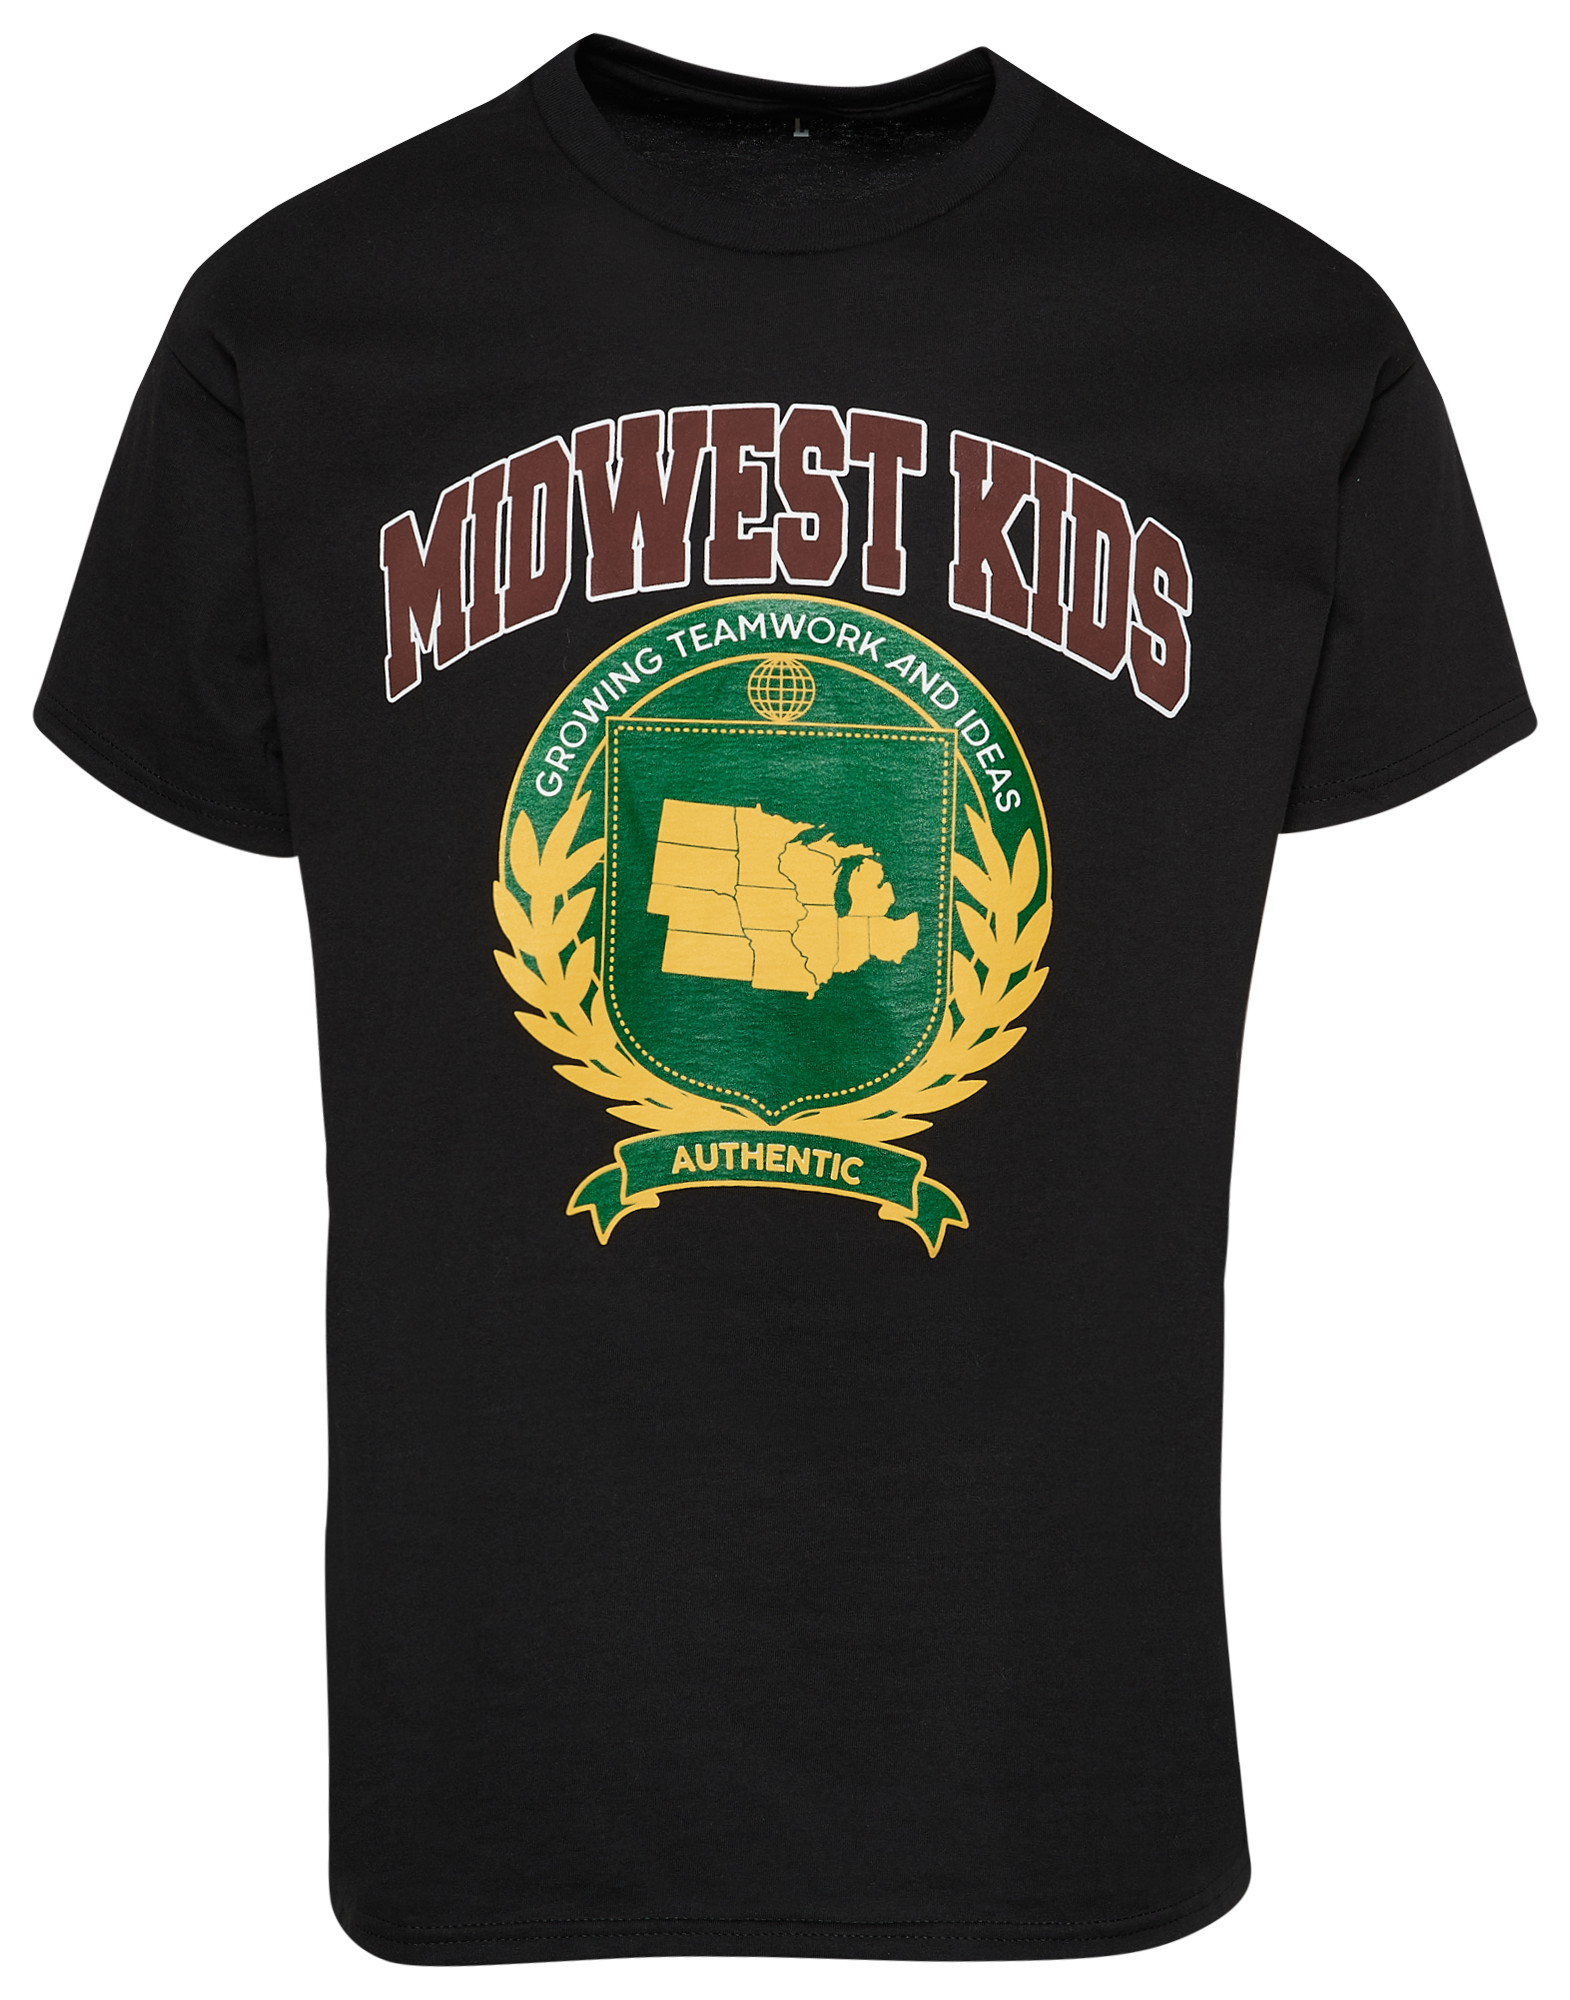 Midwest Kids Crest T-Shirt - Men's